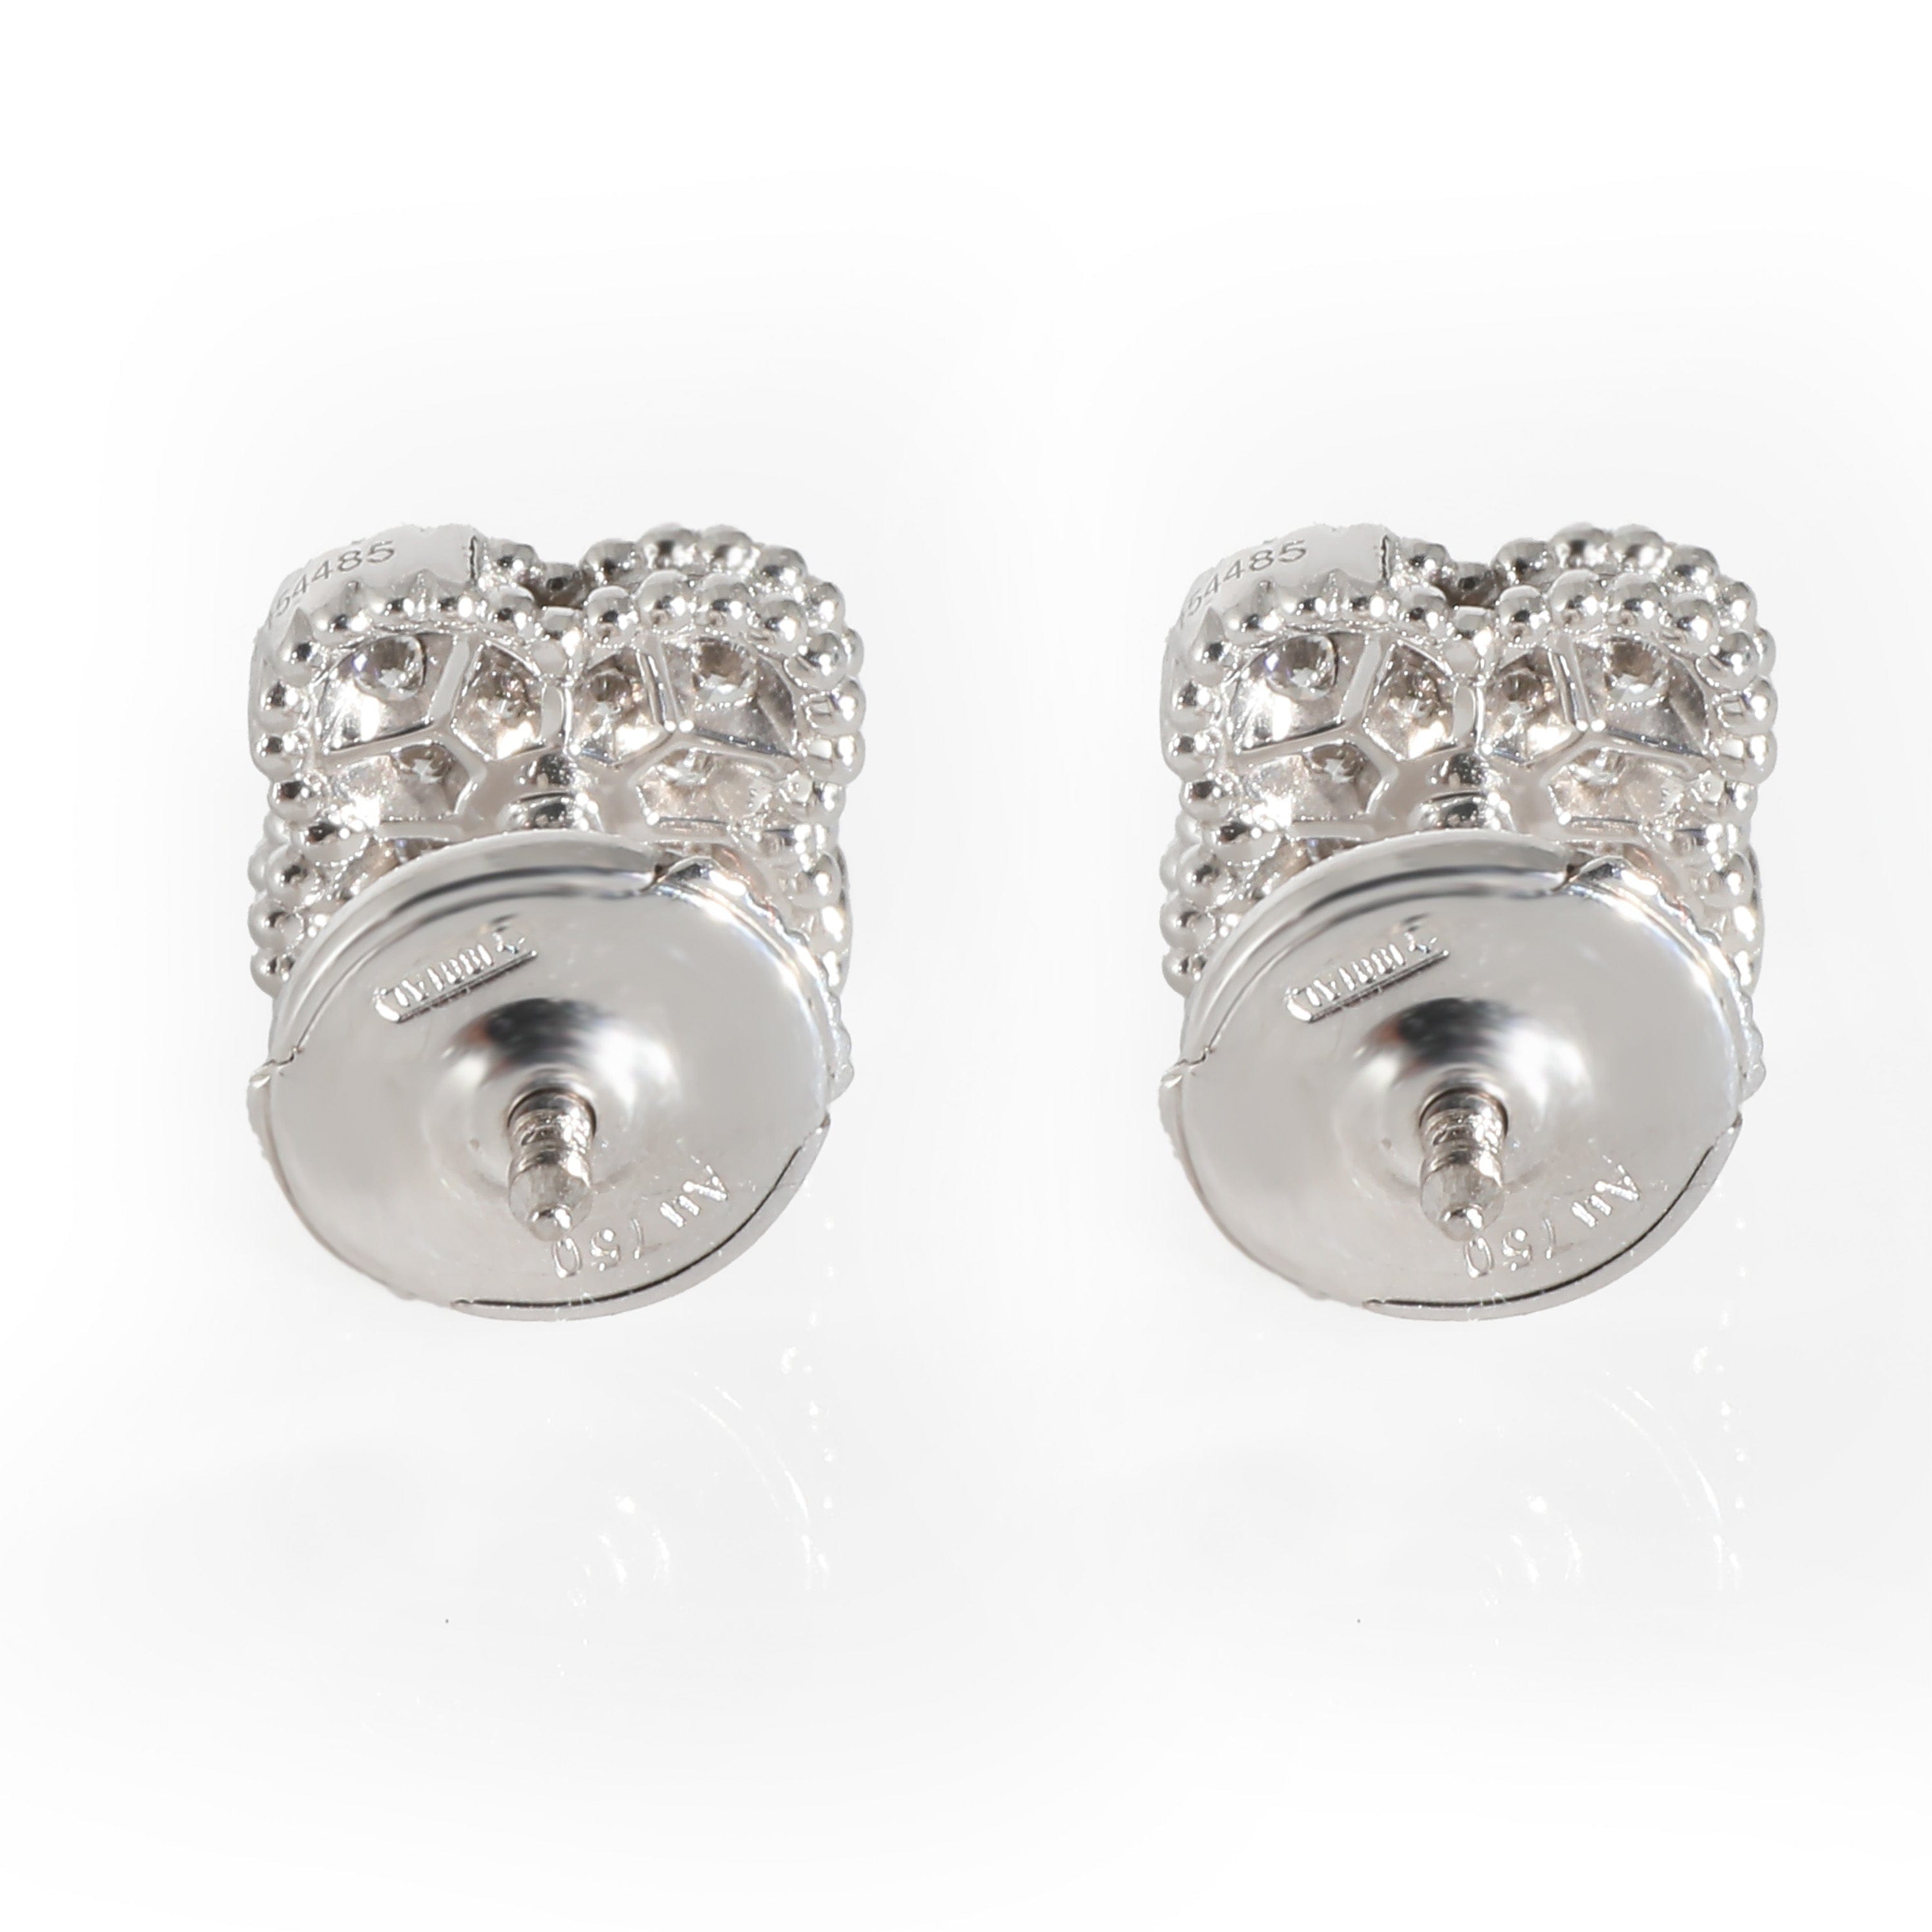 Van Cleef & Arpels Van Cleef & Arpels Alhambra Earrings in 18k White Gold 0.16 CTW